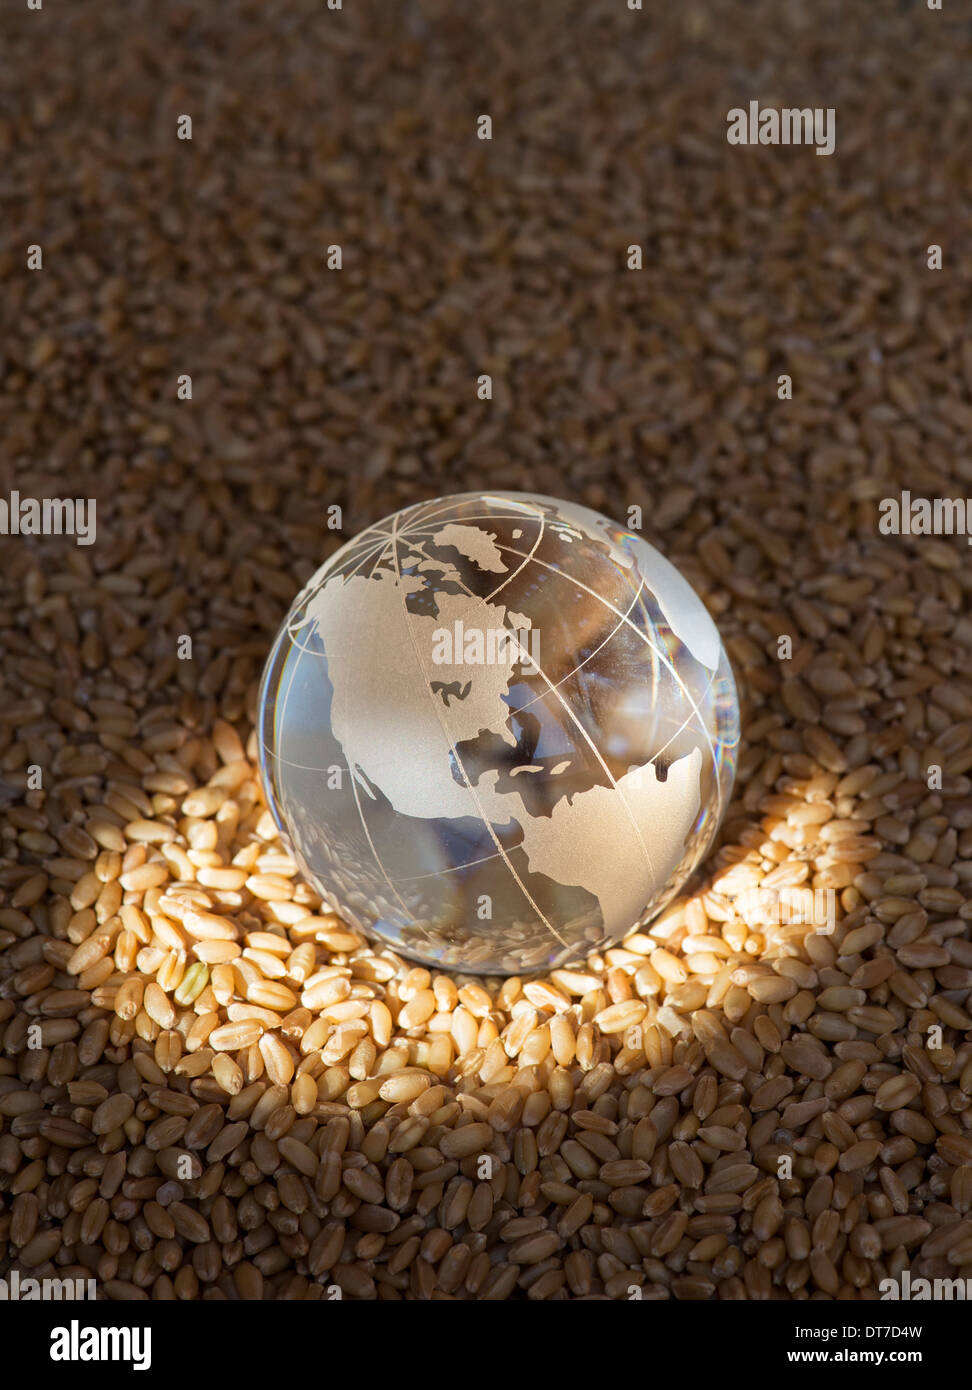 Globo de Cristal en granos de trigo resaltada por el sol para representar una crisis alimentaria mundial / escasez Foto de stock